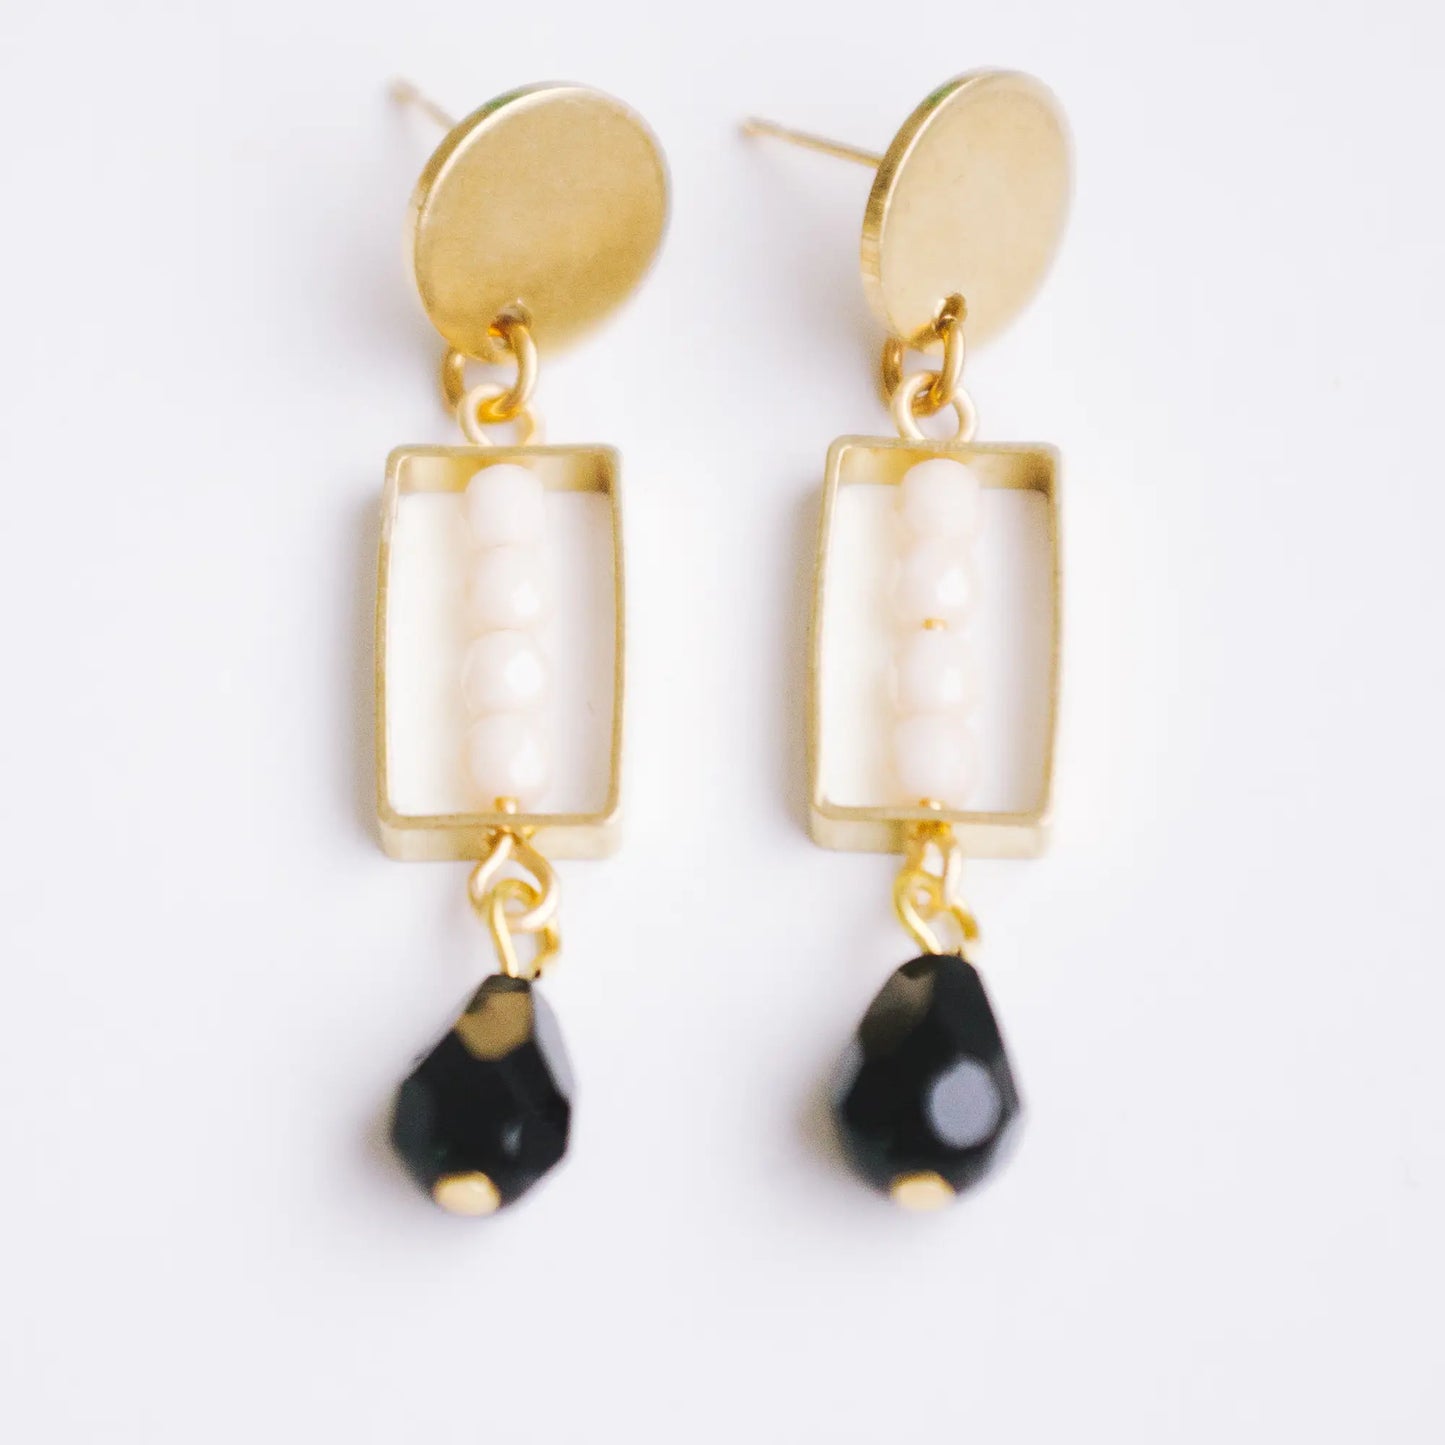 Little black and white earrings